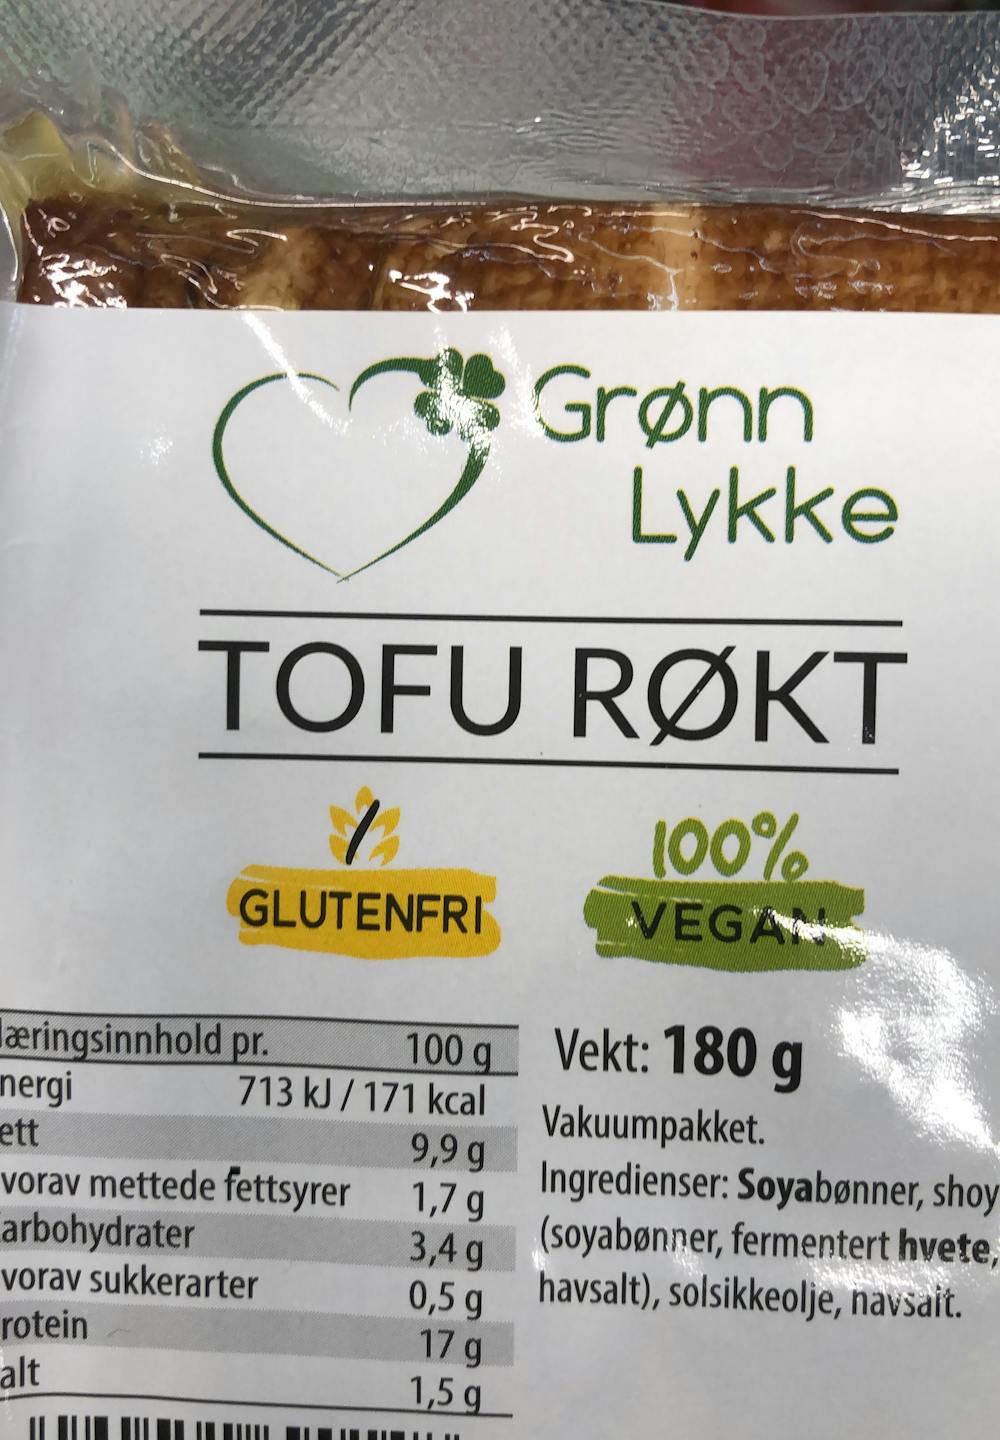 Tofu røkt, Grønn lykke